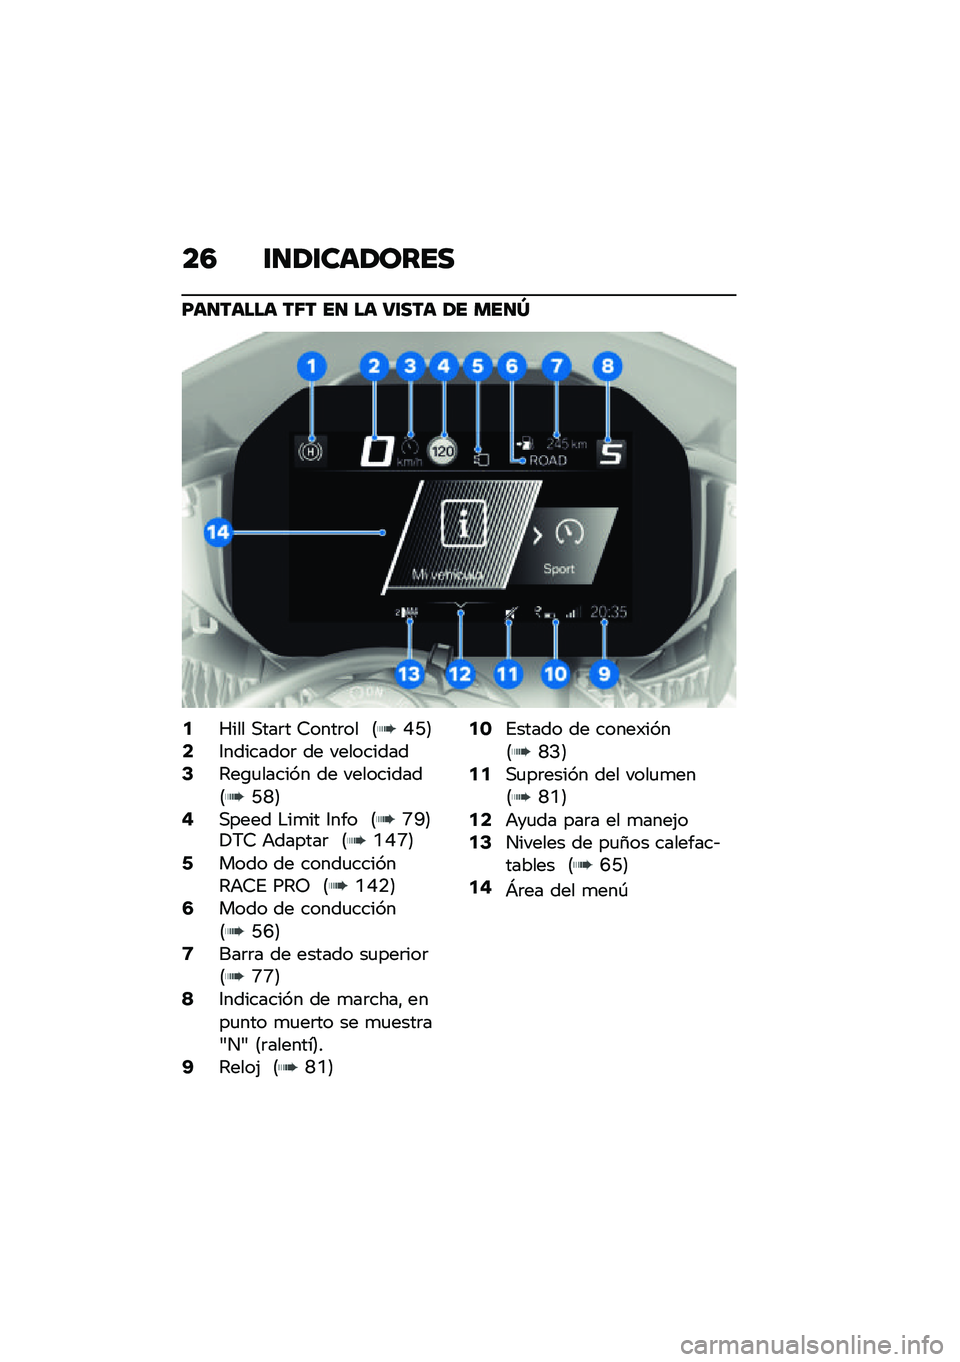 BMW MOTORRAD M 1000 RR 2021  Manual de instrucciones (in Spanish) ��4 �\f�
�1�\f���1����
�F��
����� ��6� ��
 �� �8�\f��� �1� ���
�Z
�2�S��� �,���	� �7����	�� �8�I�G�9�4�3��������	 �� ����������6�4��\b�
�����